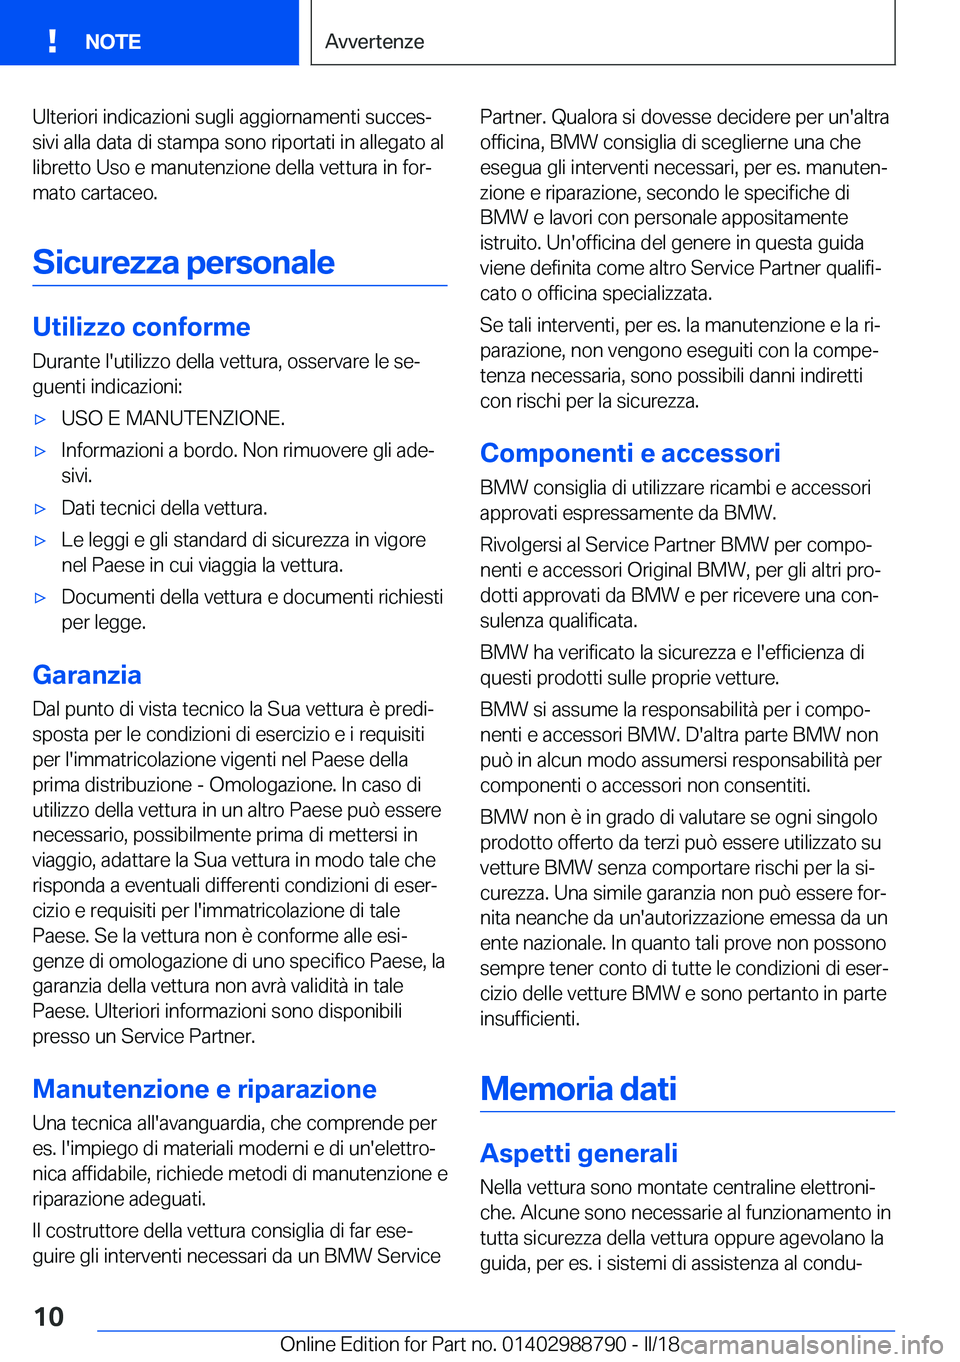 BMW X5 2018  Libretti Di Uso E manutenzione (in Italian) �U�l�t�e�r�i�o�r�i� �i�n�d�i�c�a�z�i�o�n�i� �s�u�g�l�i� �a�g�g�i�o�r�n�a�m�e�n�t�i� �s�u�c�c�e�sª
�s�i�v�i� �a�l�l�a� �d�a�t�a� �d�i� �s�t�a�m�p�a� �s�o�n�o� �r�i�p�o�r�t�a�t�i� �i�n� �a�l�l�e�g�a�t